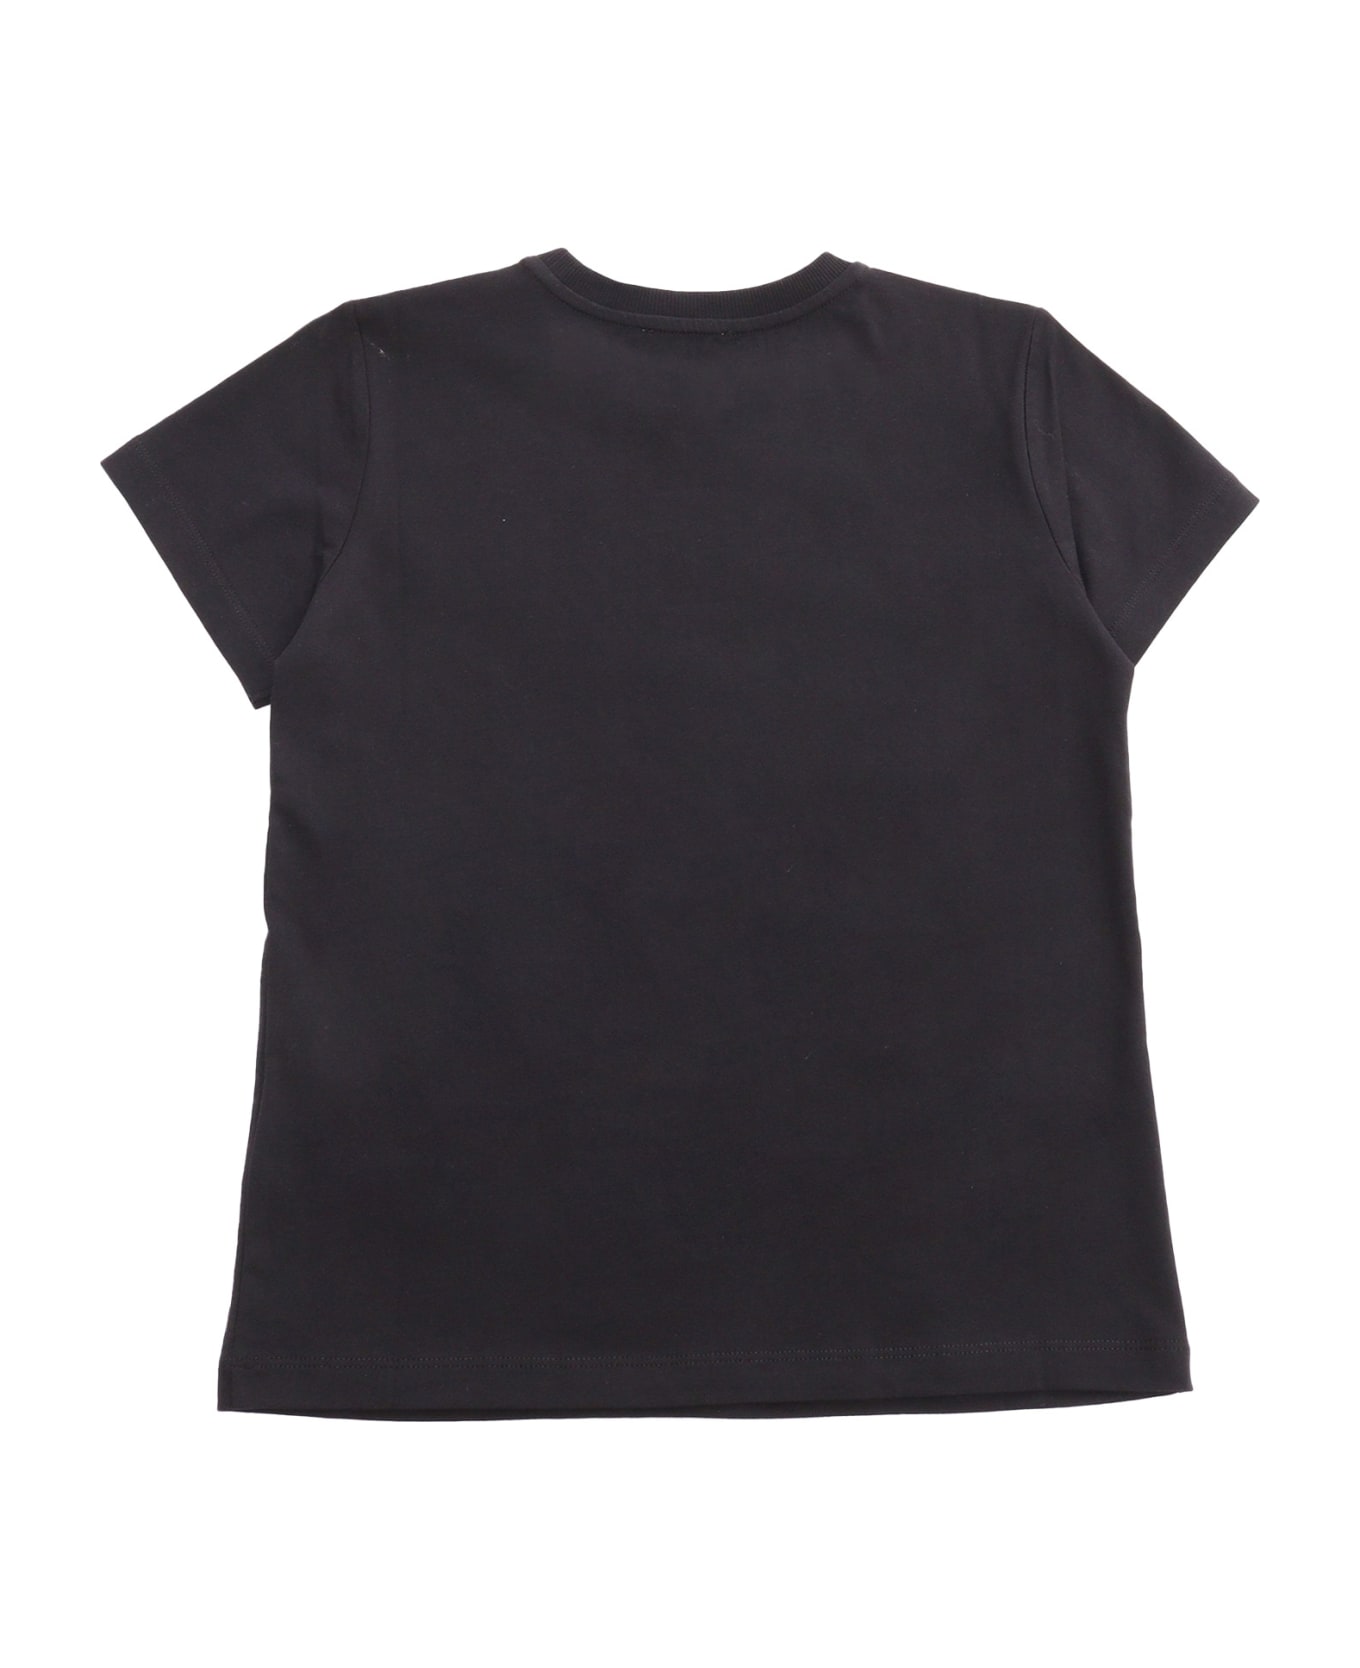 Moschino Black T-shirt - BLACK